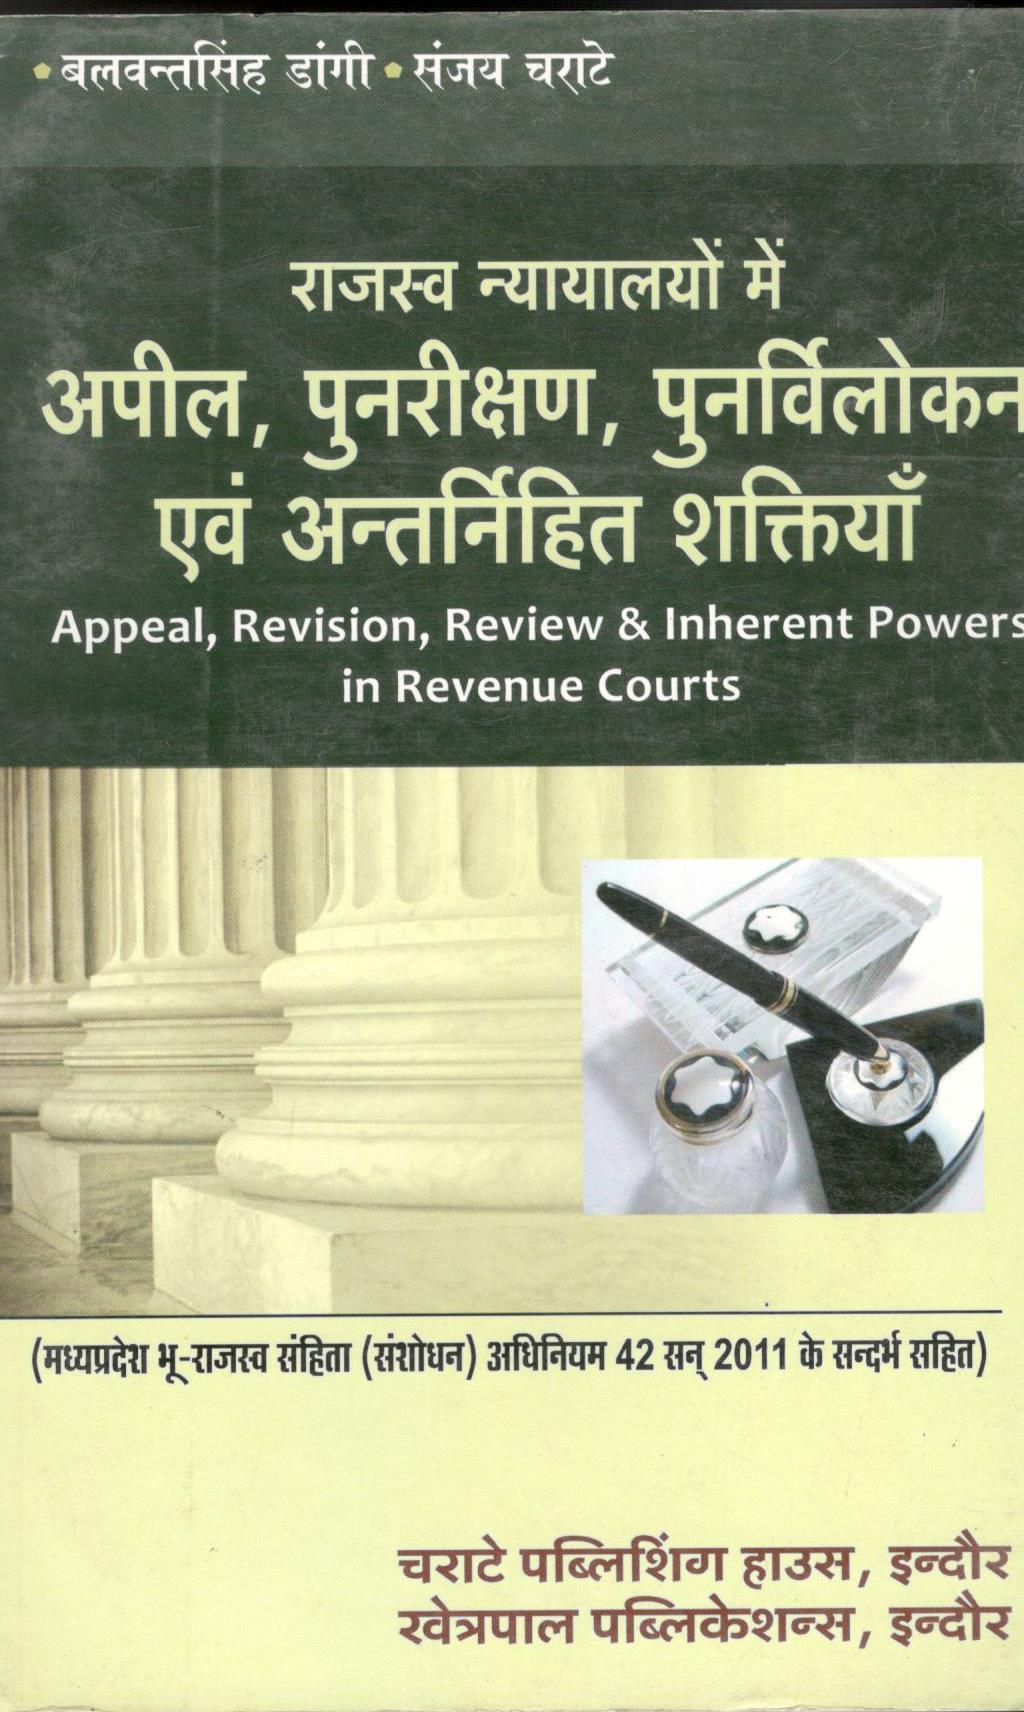  Buy बलवंत सिंह डांगी, संजय चराटे - राजस्व न्यायालयों में अपील, पुनरीक्षण, पुनर्विलोकन एवं अंतर्निहित शक्तियाँ / Appeal, Revision, Review &  Inherent Powers in Revenue Courts